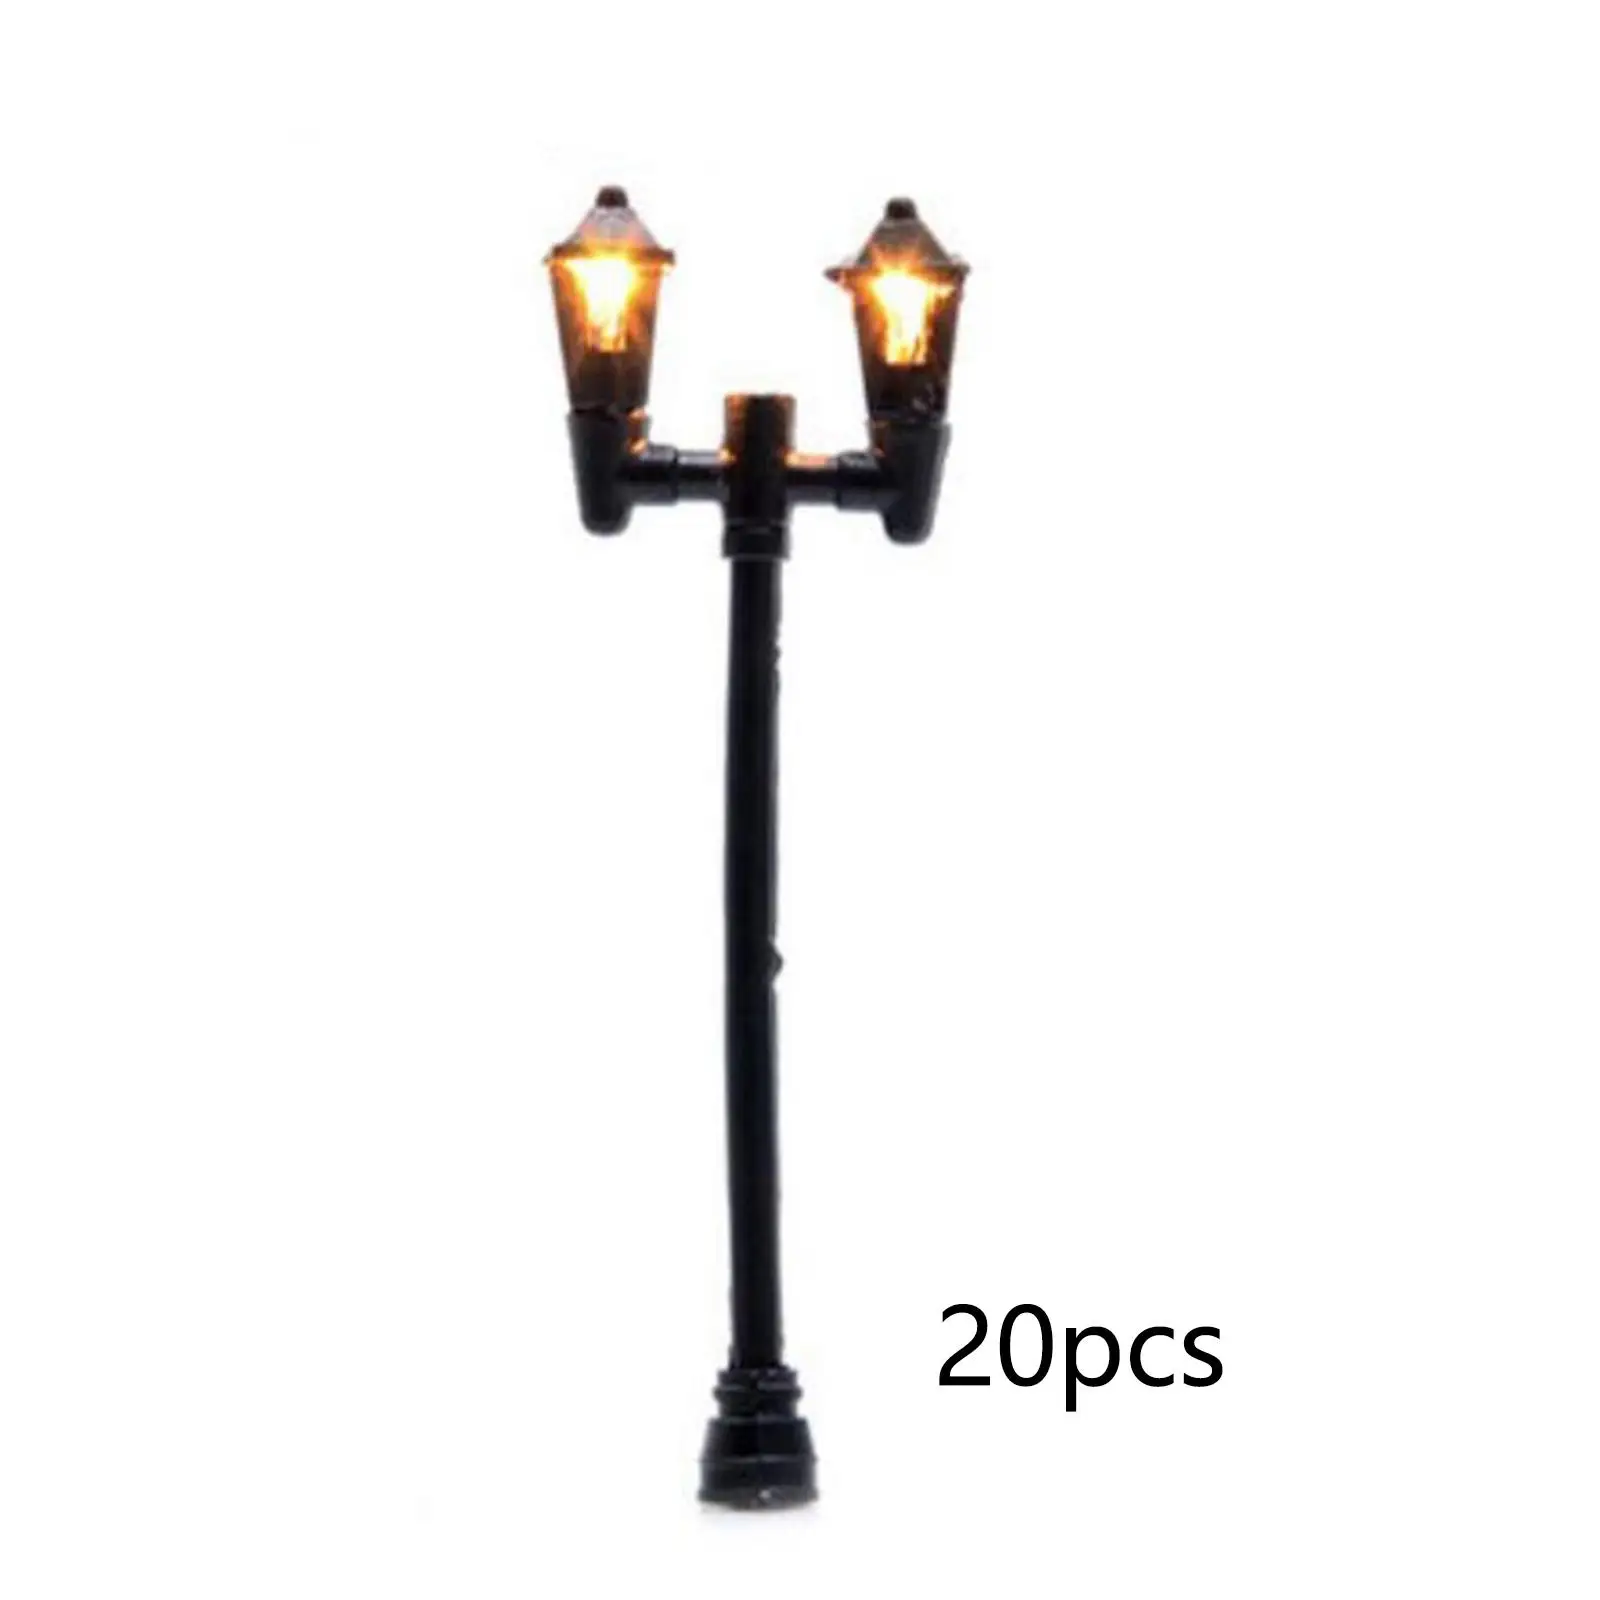 20Pcs Model Railway Lamp Garden Street Light Accessories Miniature Street Light Model